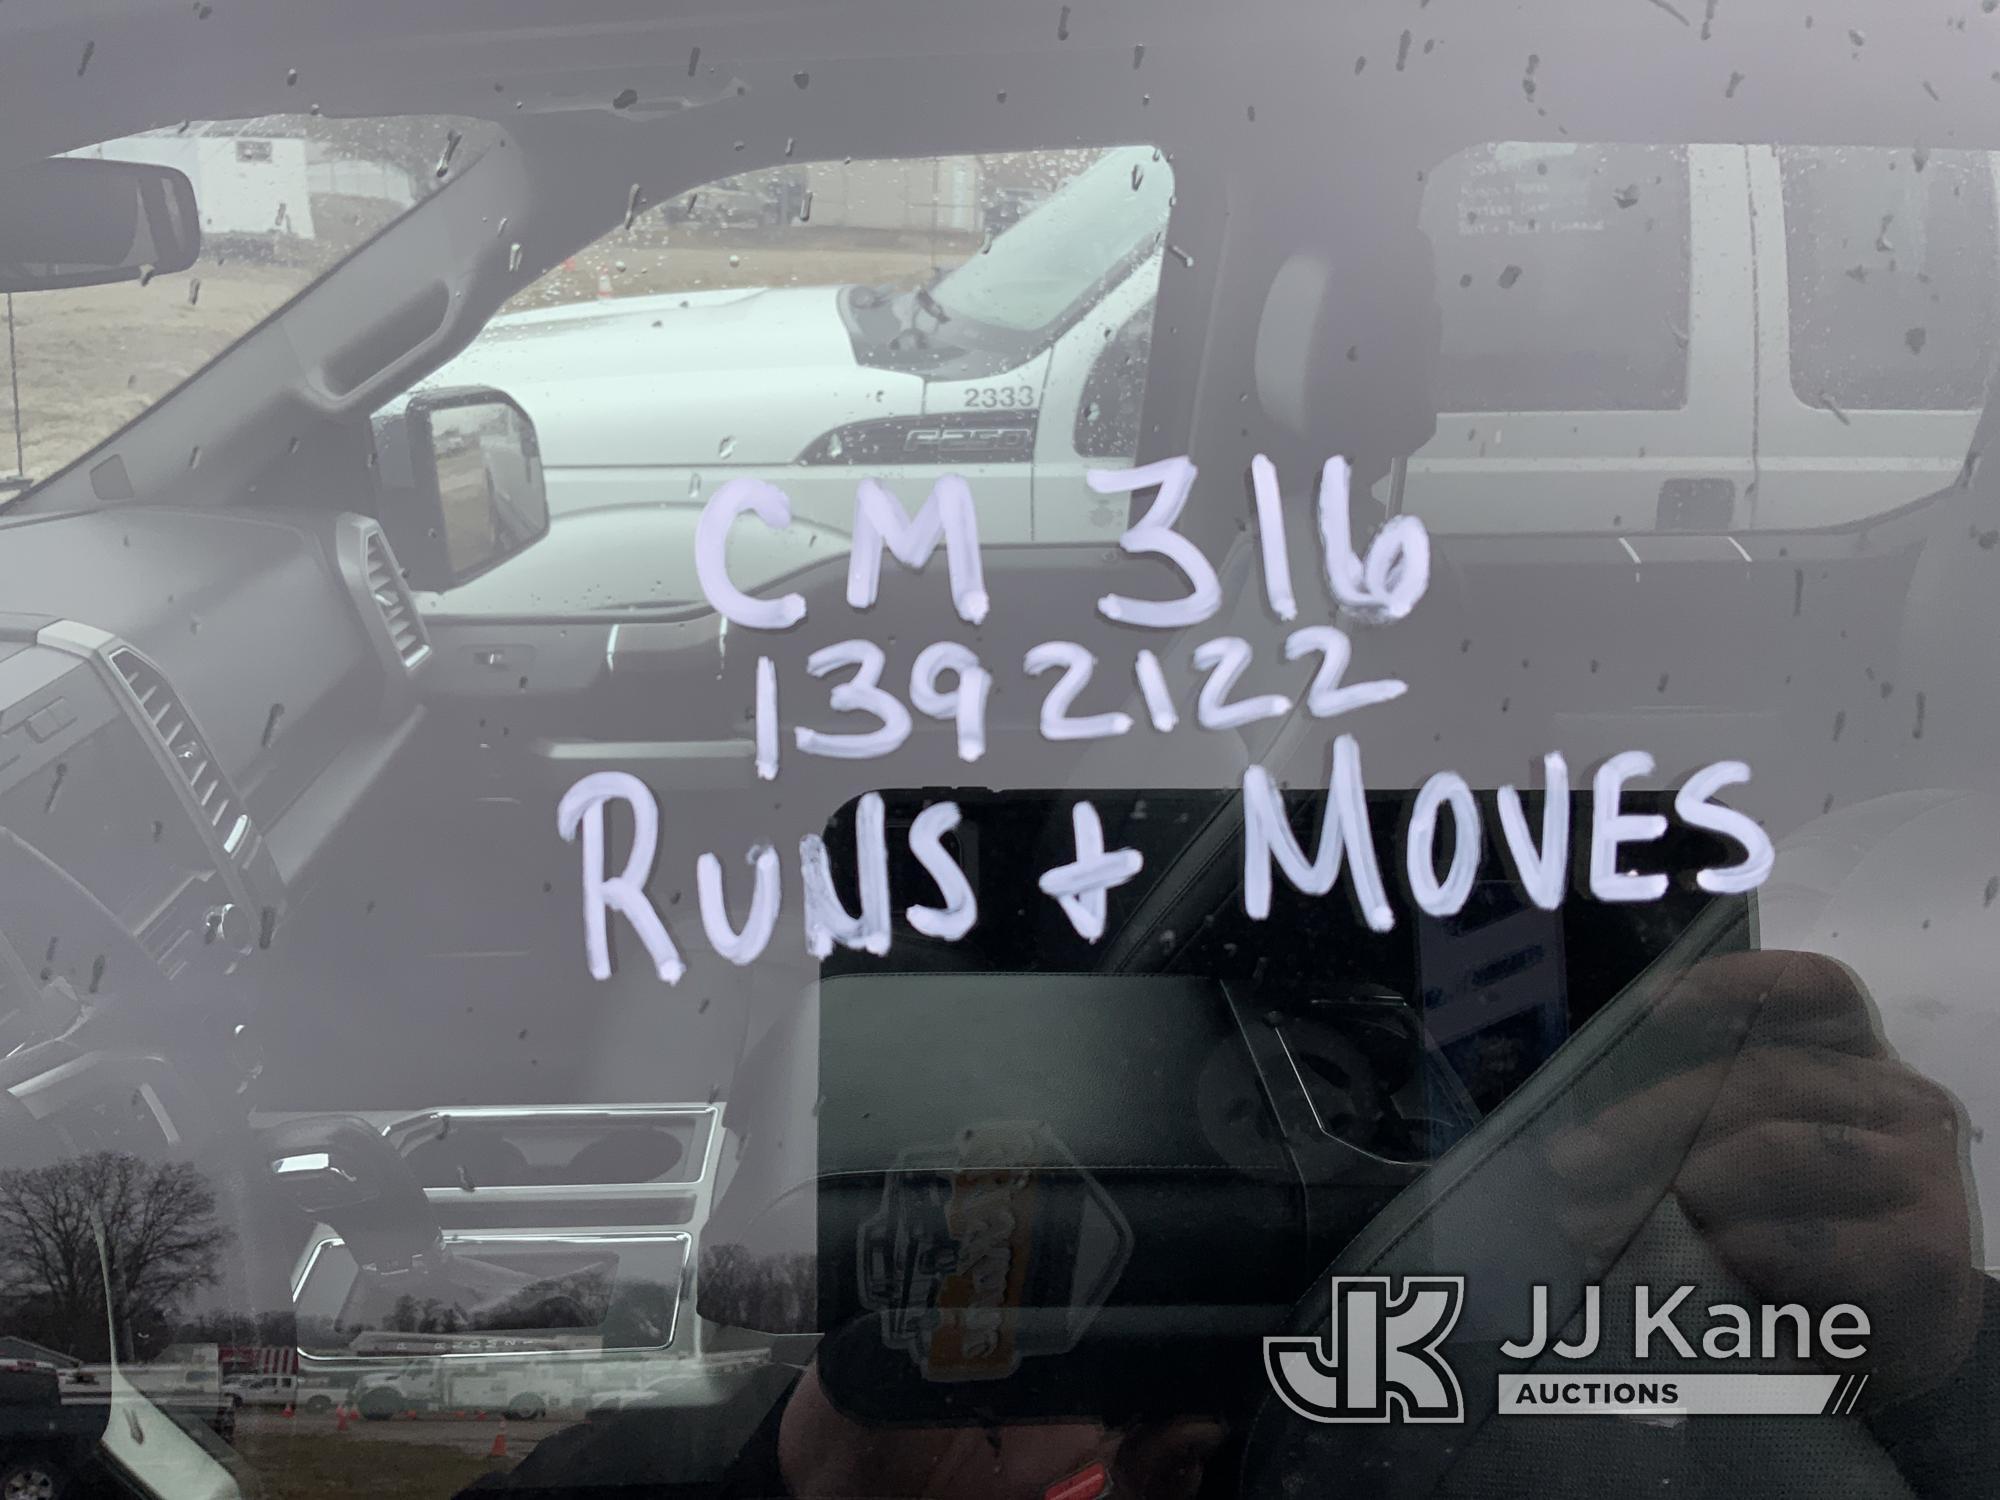 (Charlotte, MI) 2016 Ford F150 4x4 Crew-Cab Pickup Truck Runs, Moves